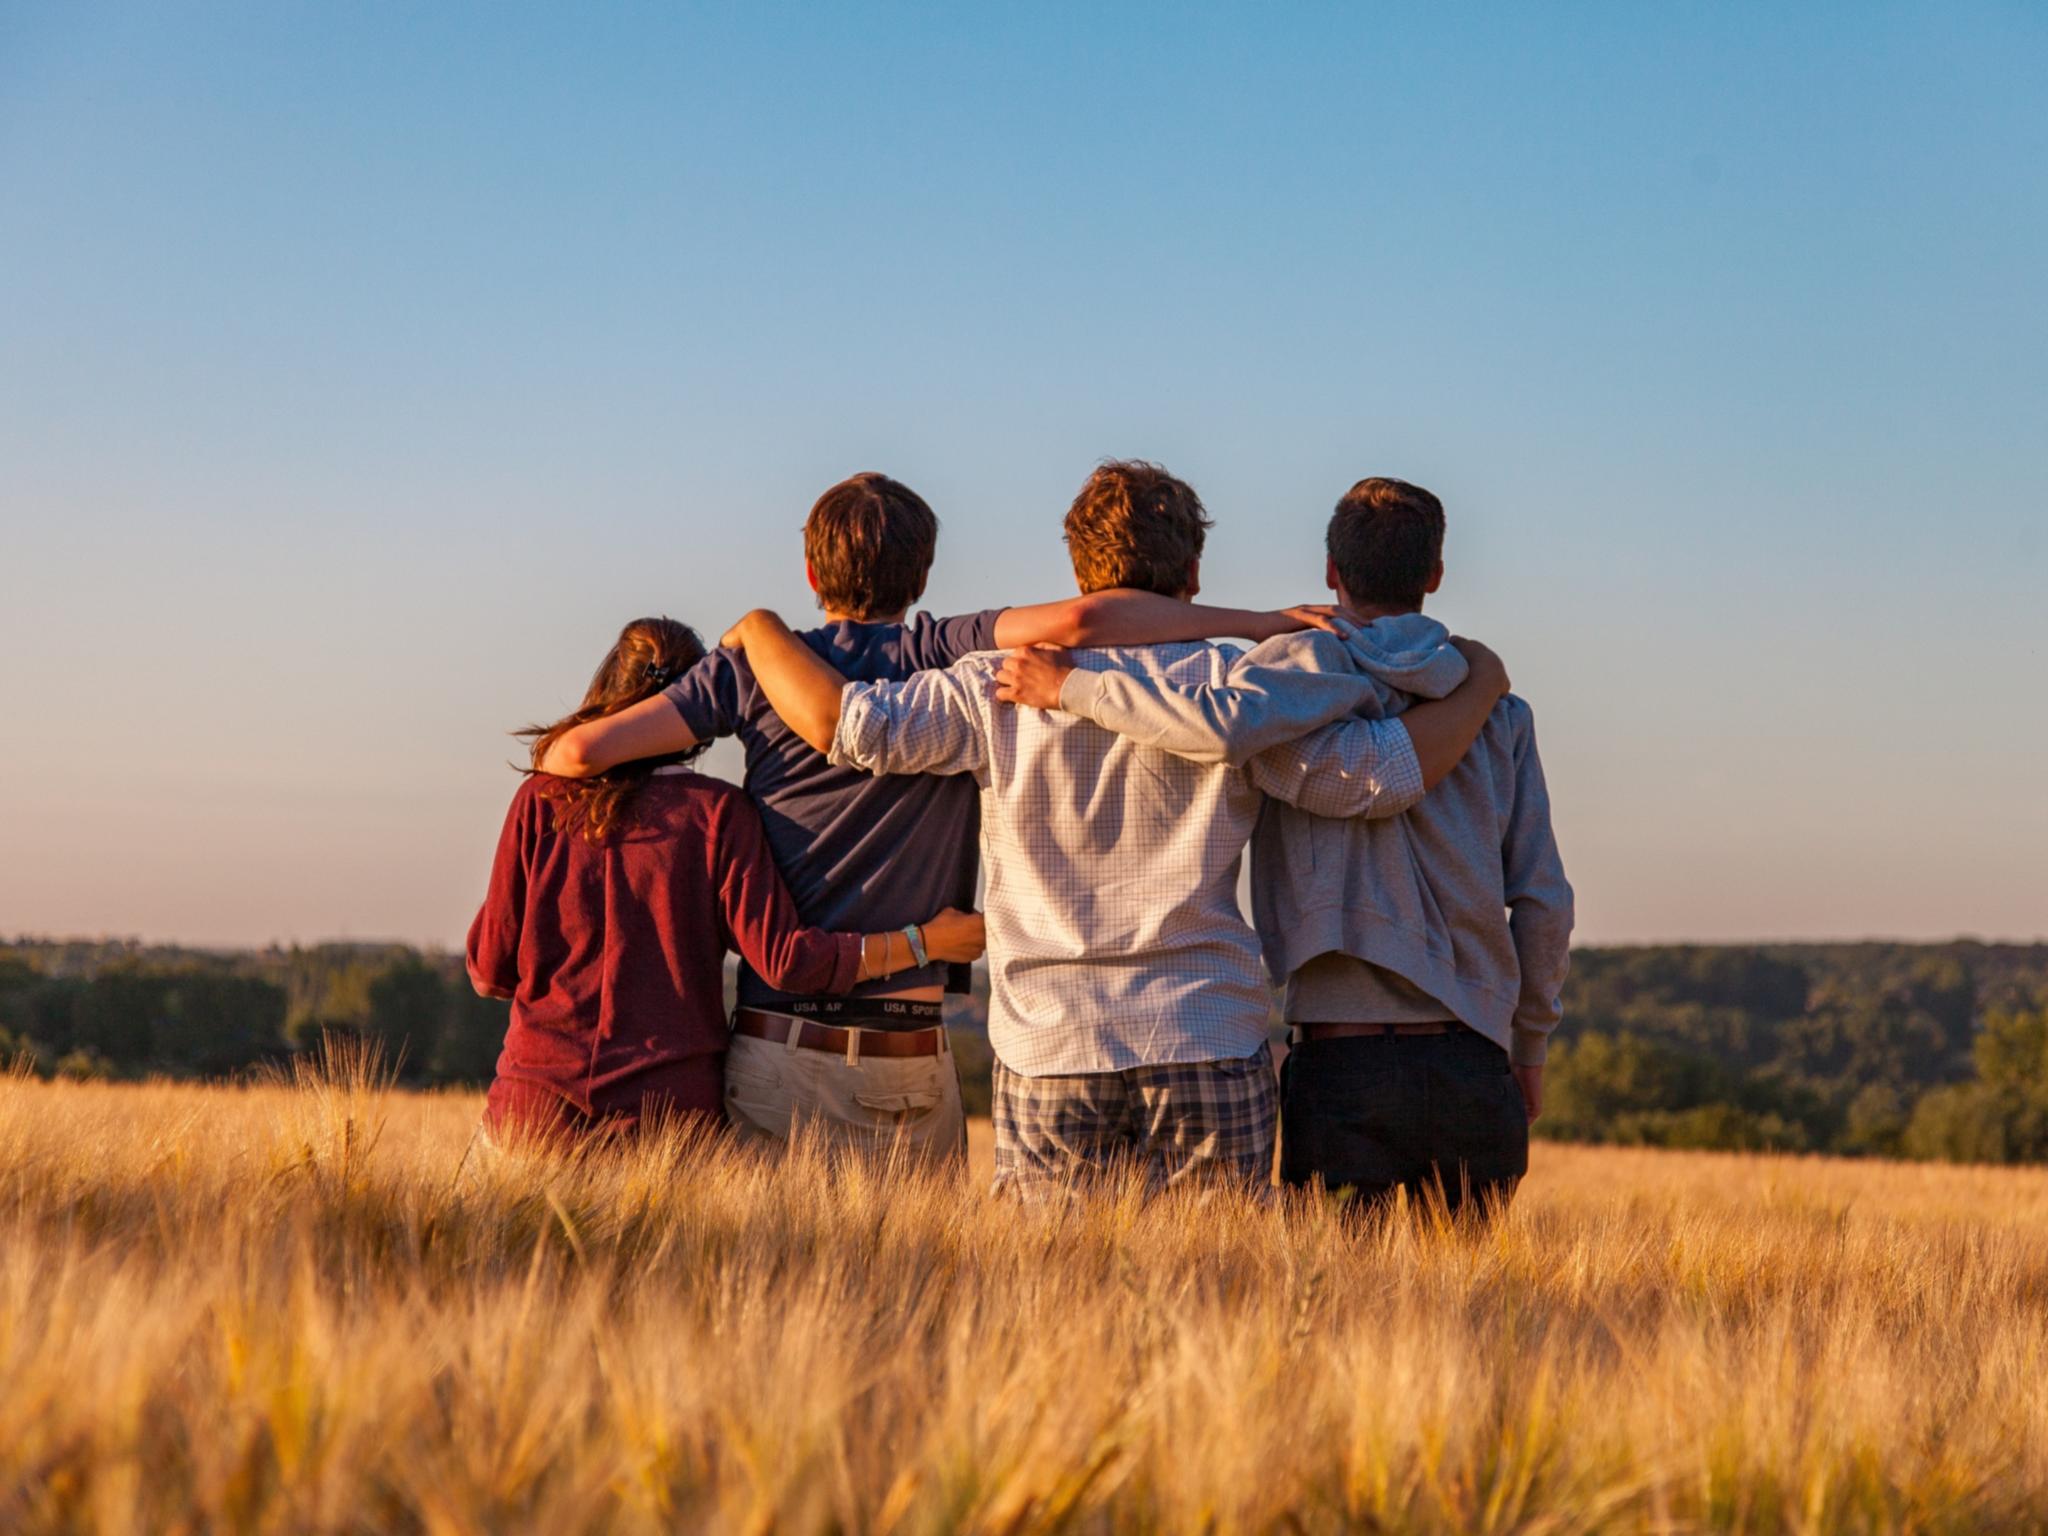 Man sieht vier Jugendliche von hinten, die auf einem Feld sitzen und sich in den Armen liegen. Es ist Sommer, der Himmel ist blau.